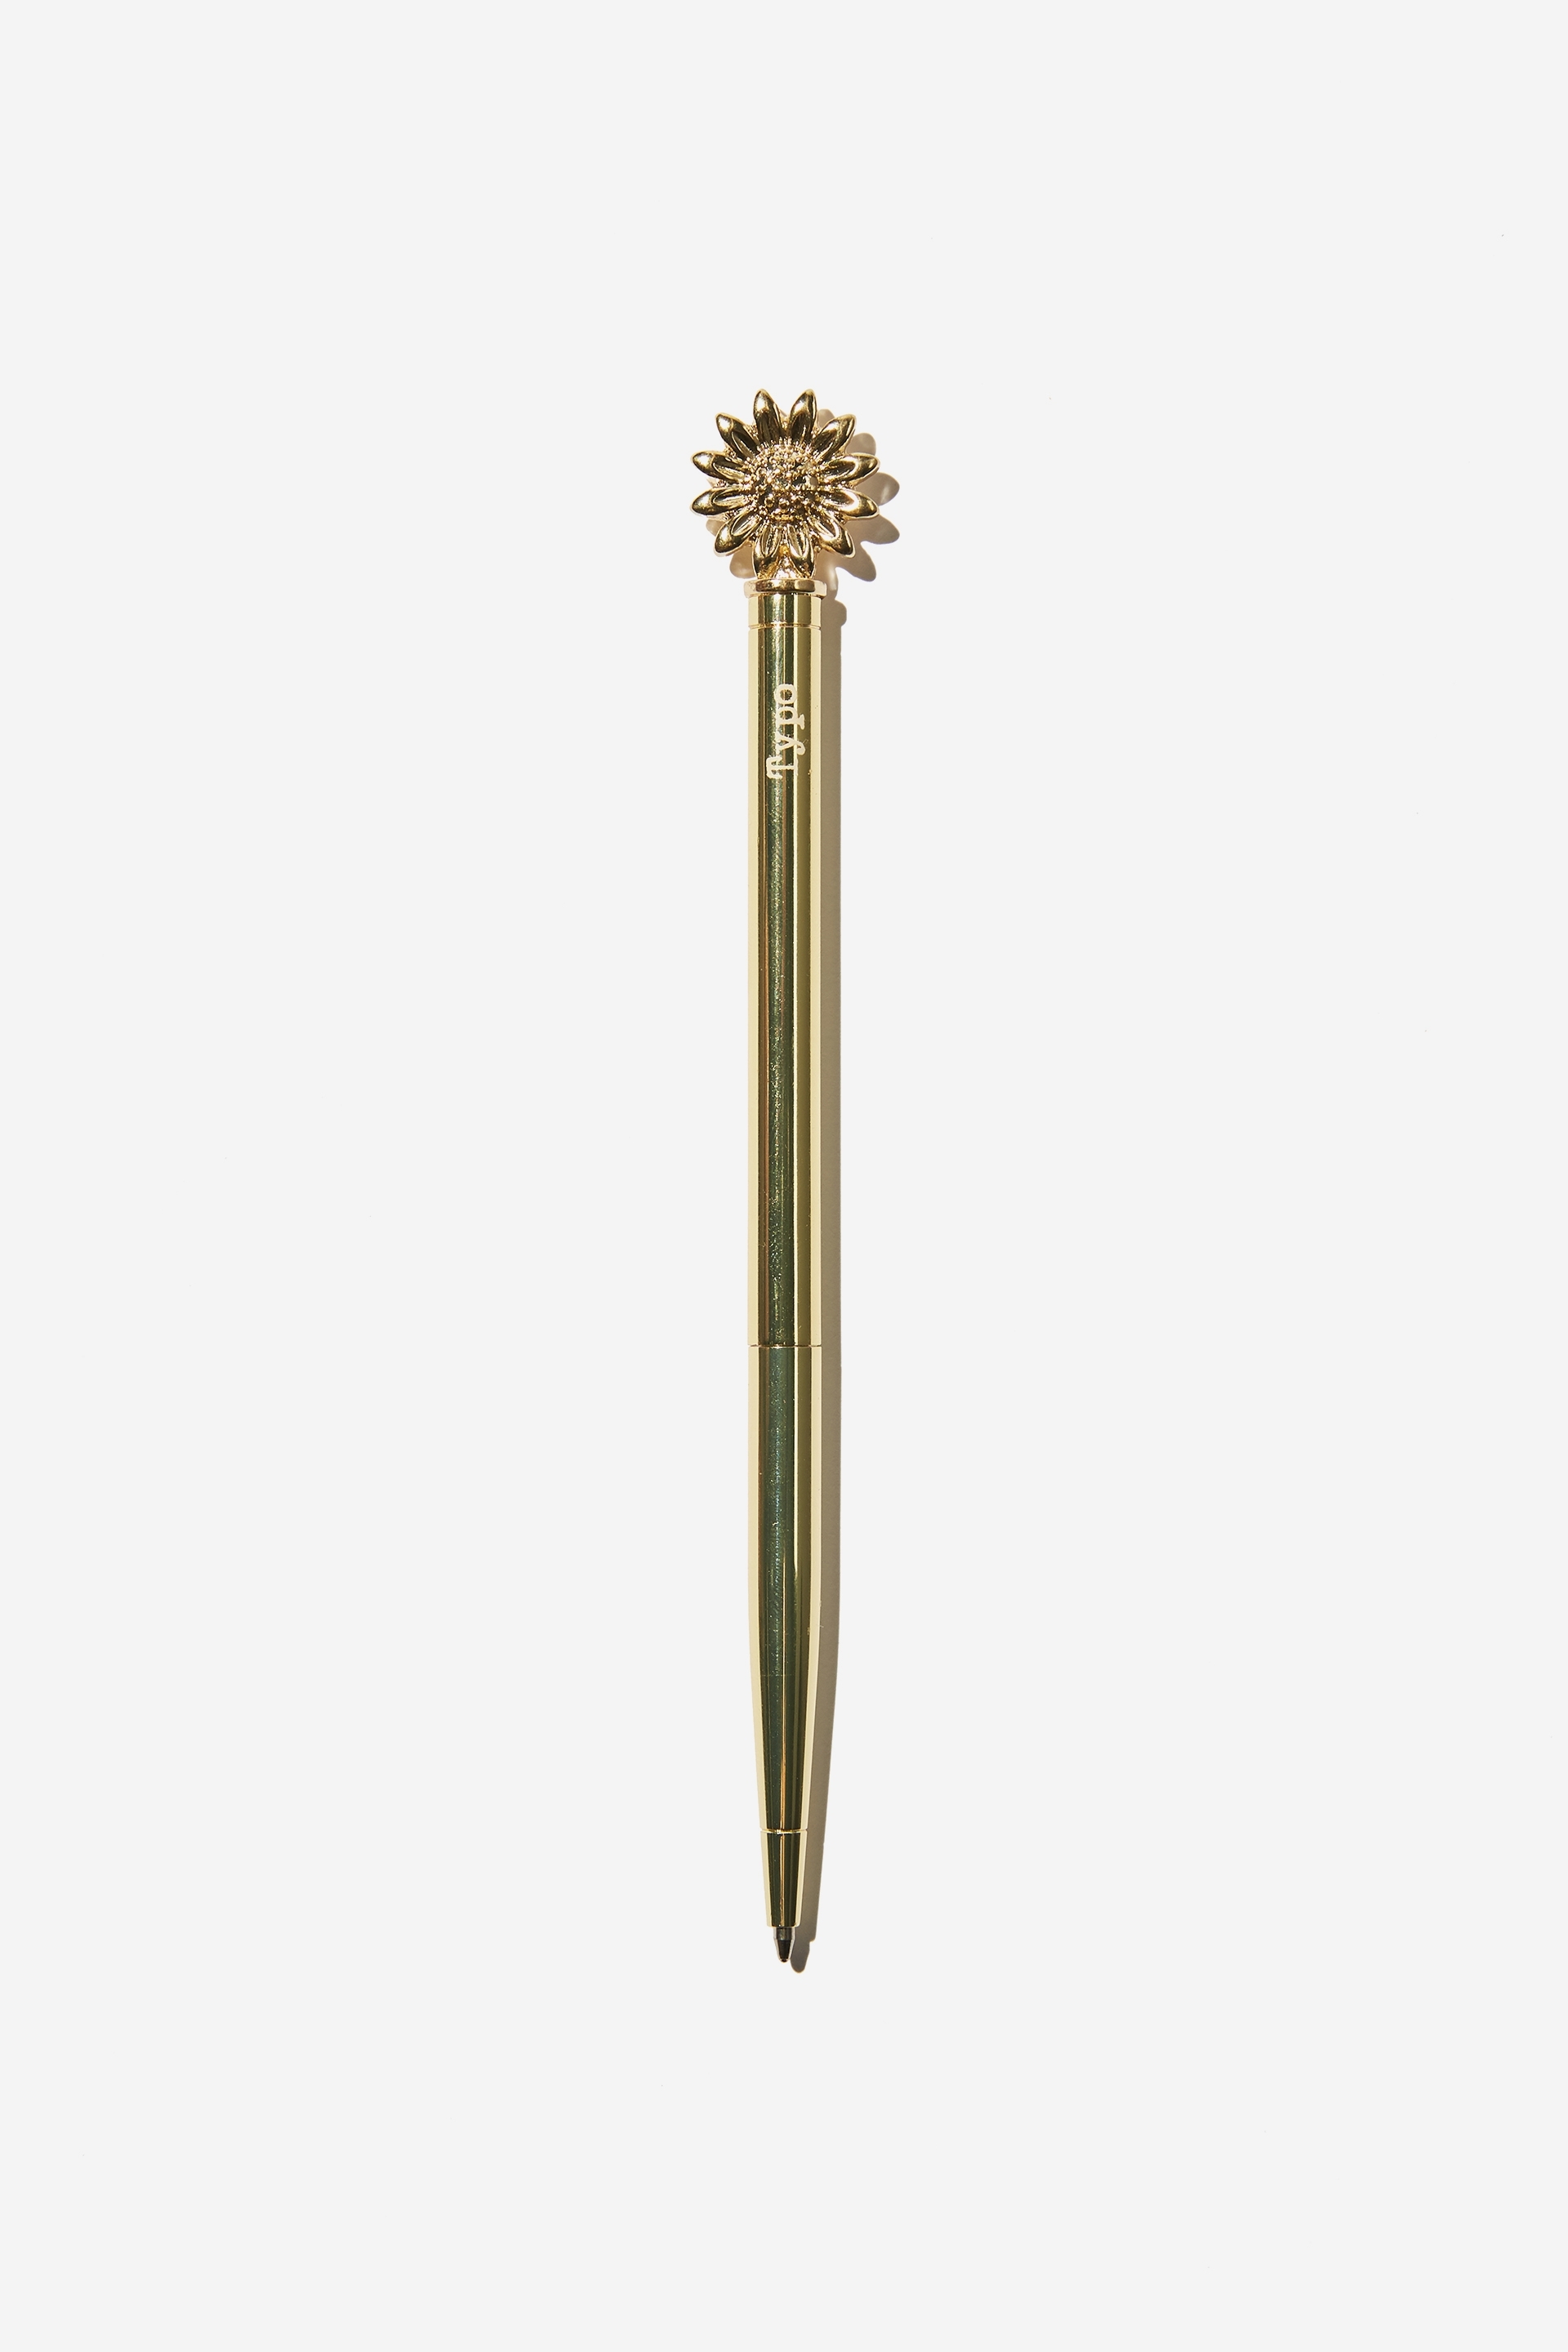 Typo - Iconic Metal Pen - Sunflower